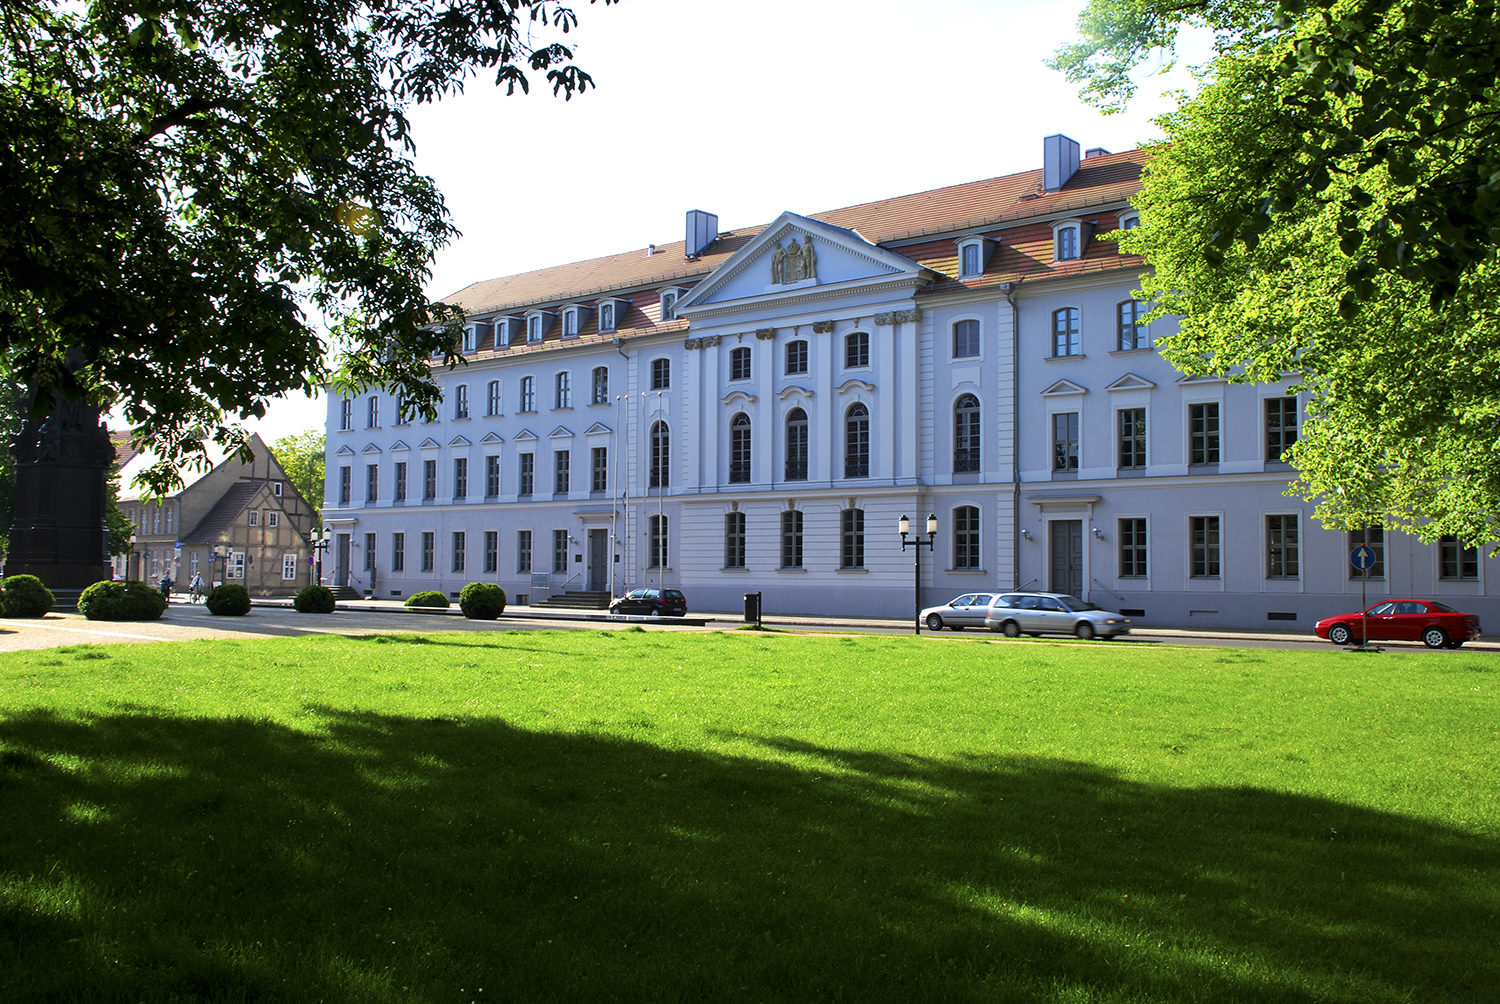 University of Greifswald, ©Jan Meßerschmidt